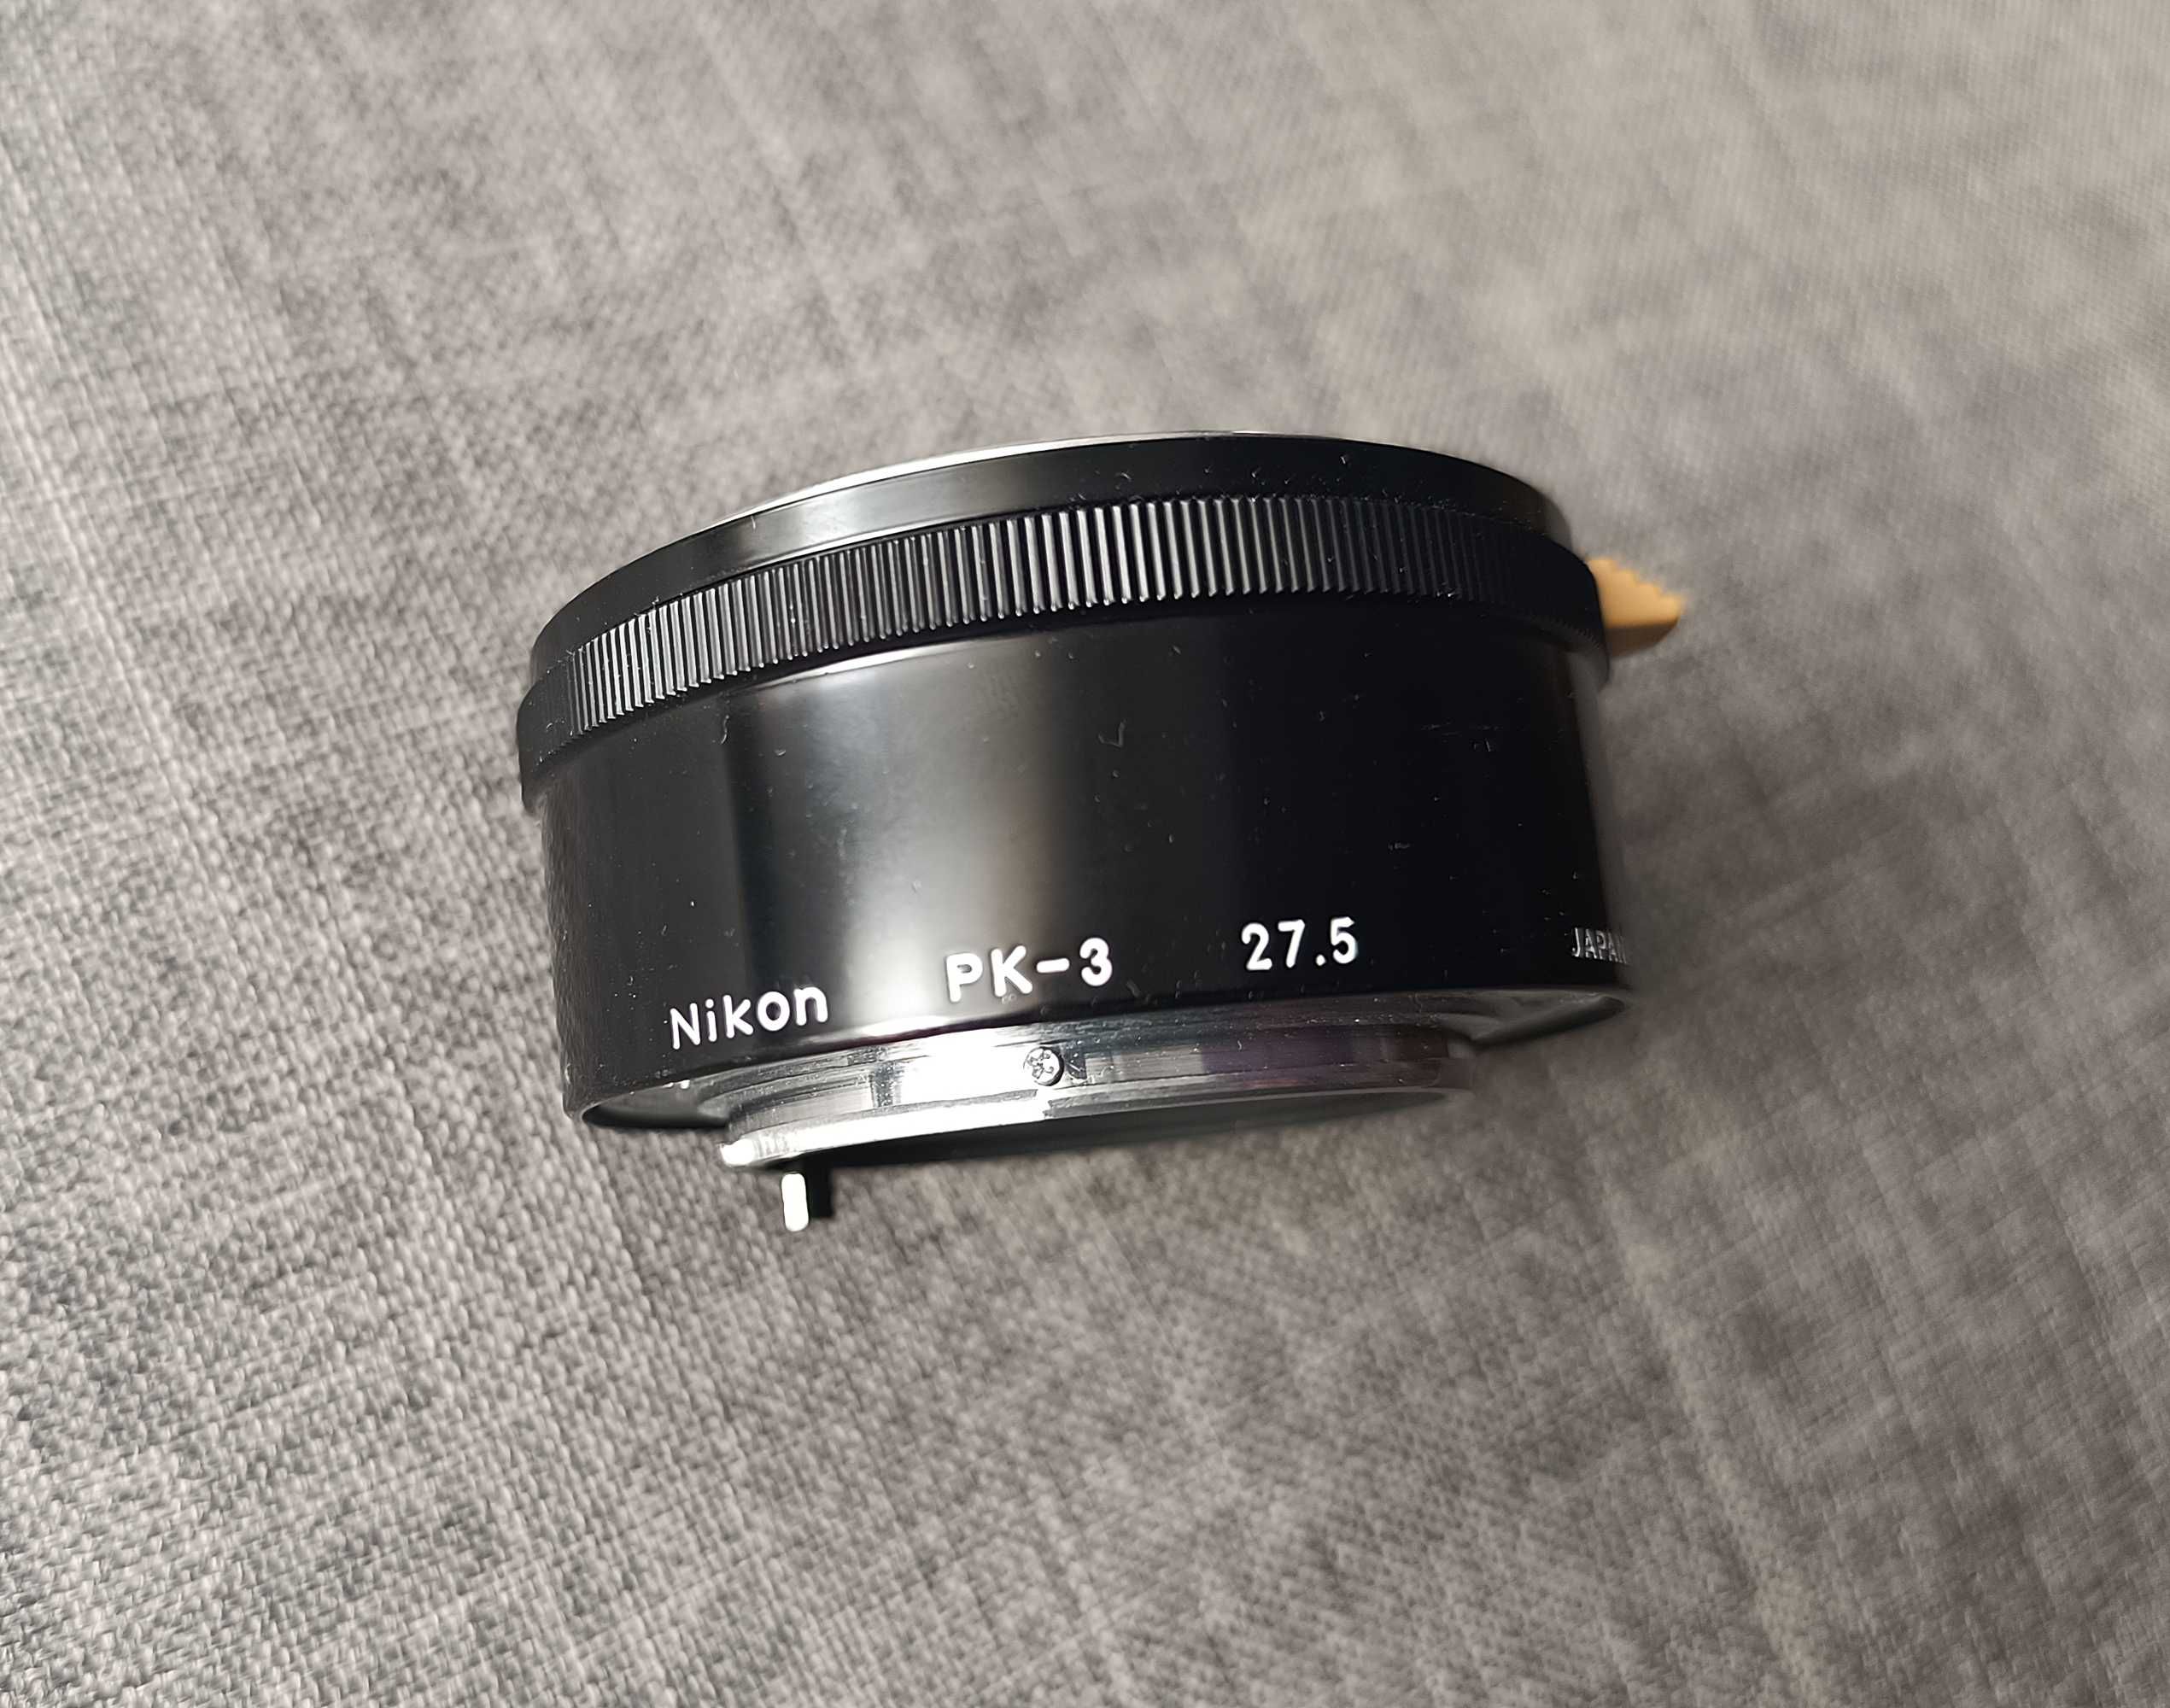 Pierścień pośredni do aparatu Nikon PK-3 (27,5)